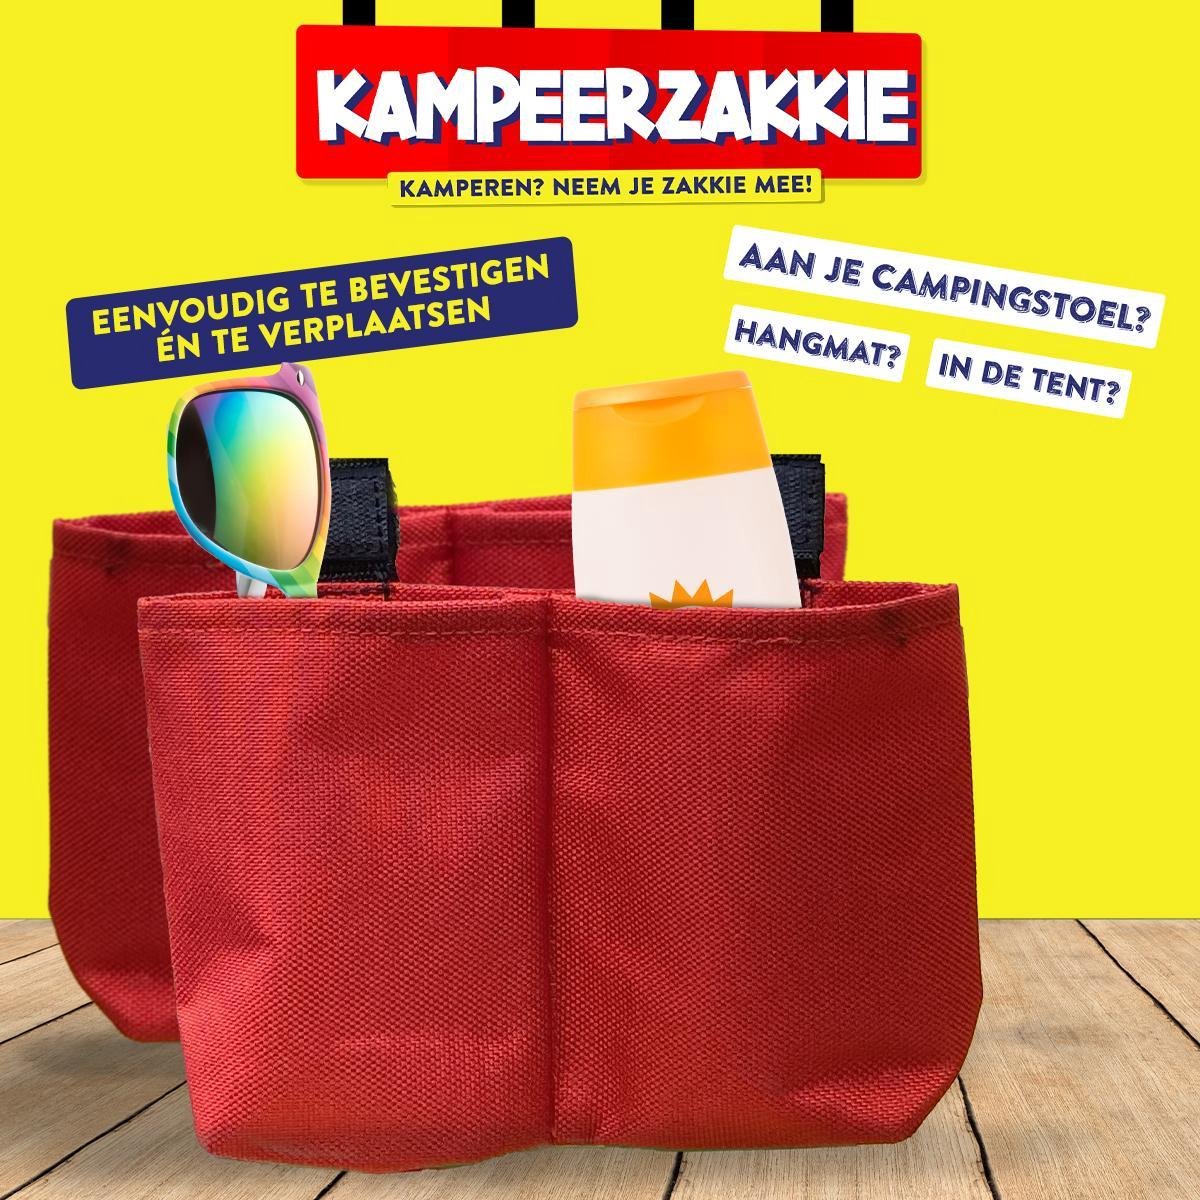 8 x Kampeerzakkie! | 4+4 gratis | Camping Gadget | Kamperen | Ook voor thuisvakanties Handig voor op de camping! Aan je stoel, tafel, parasol of in de tent